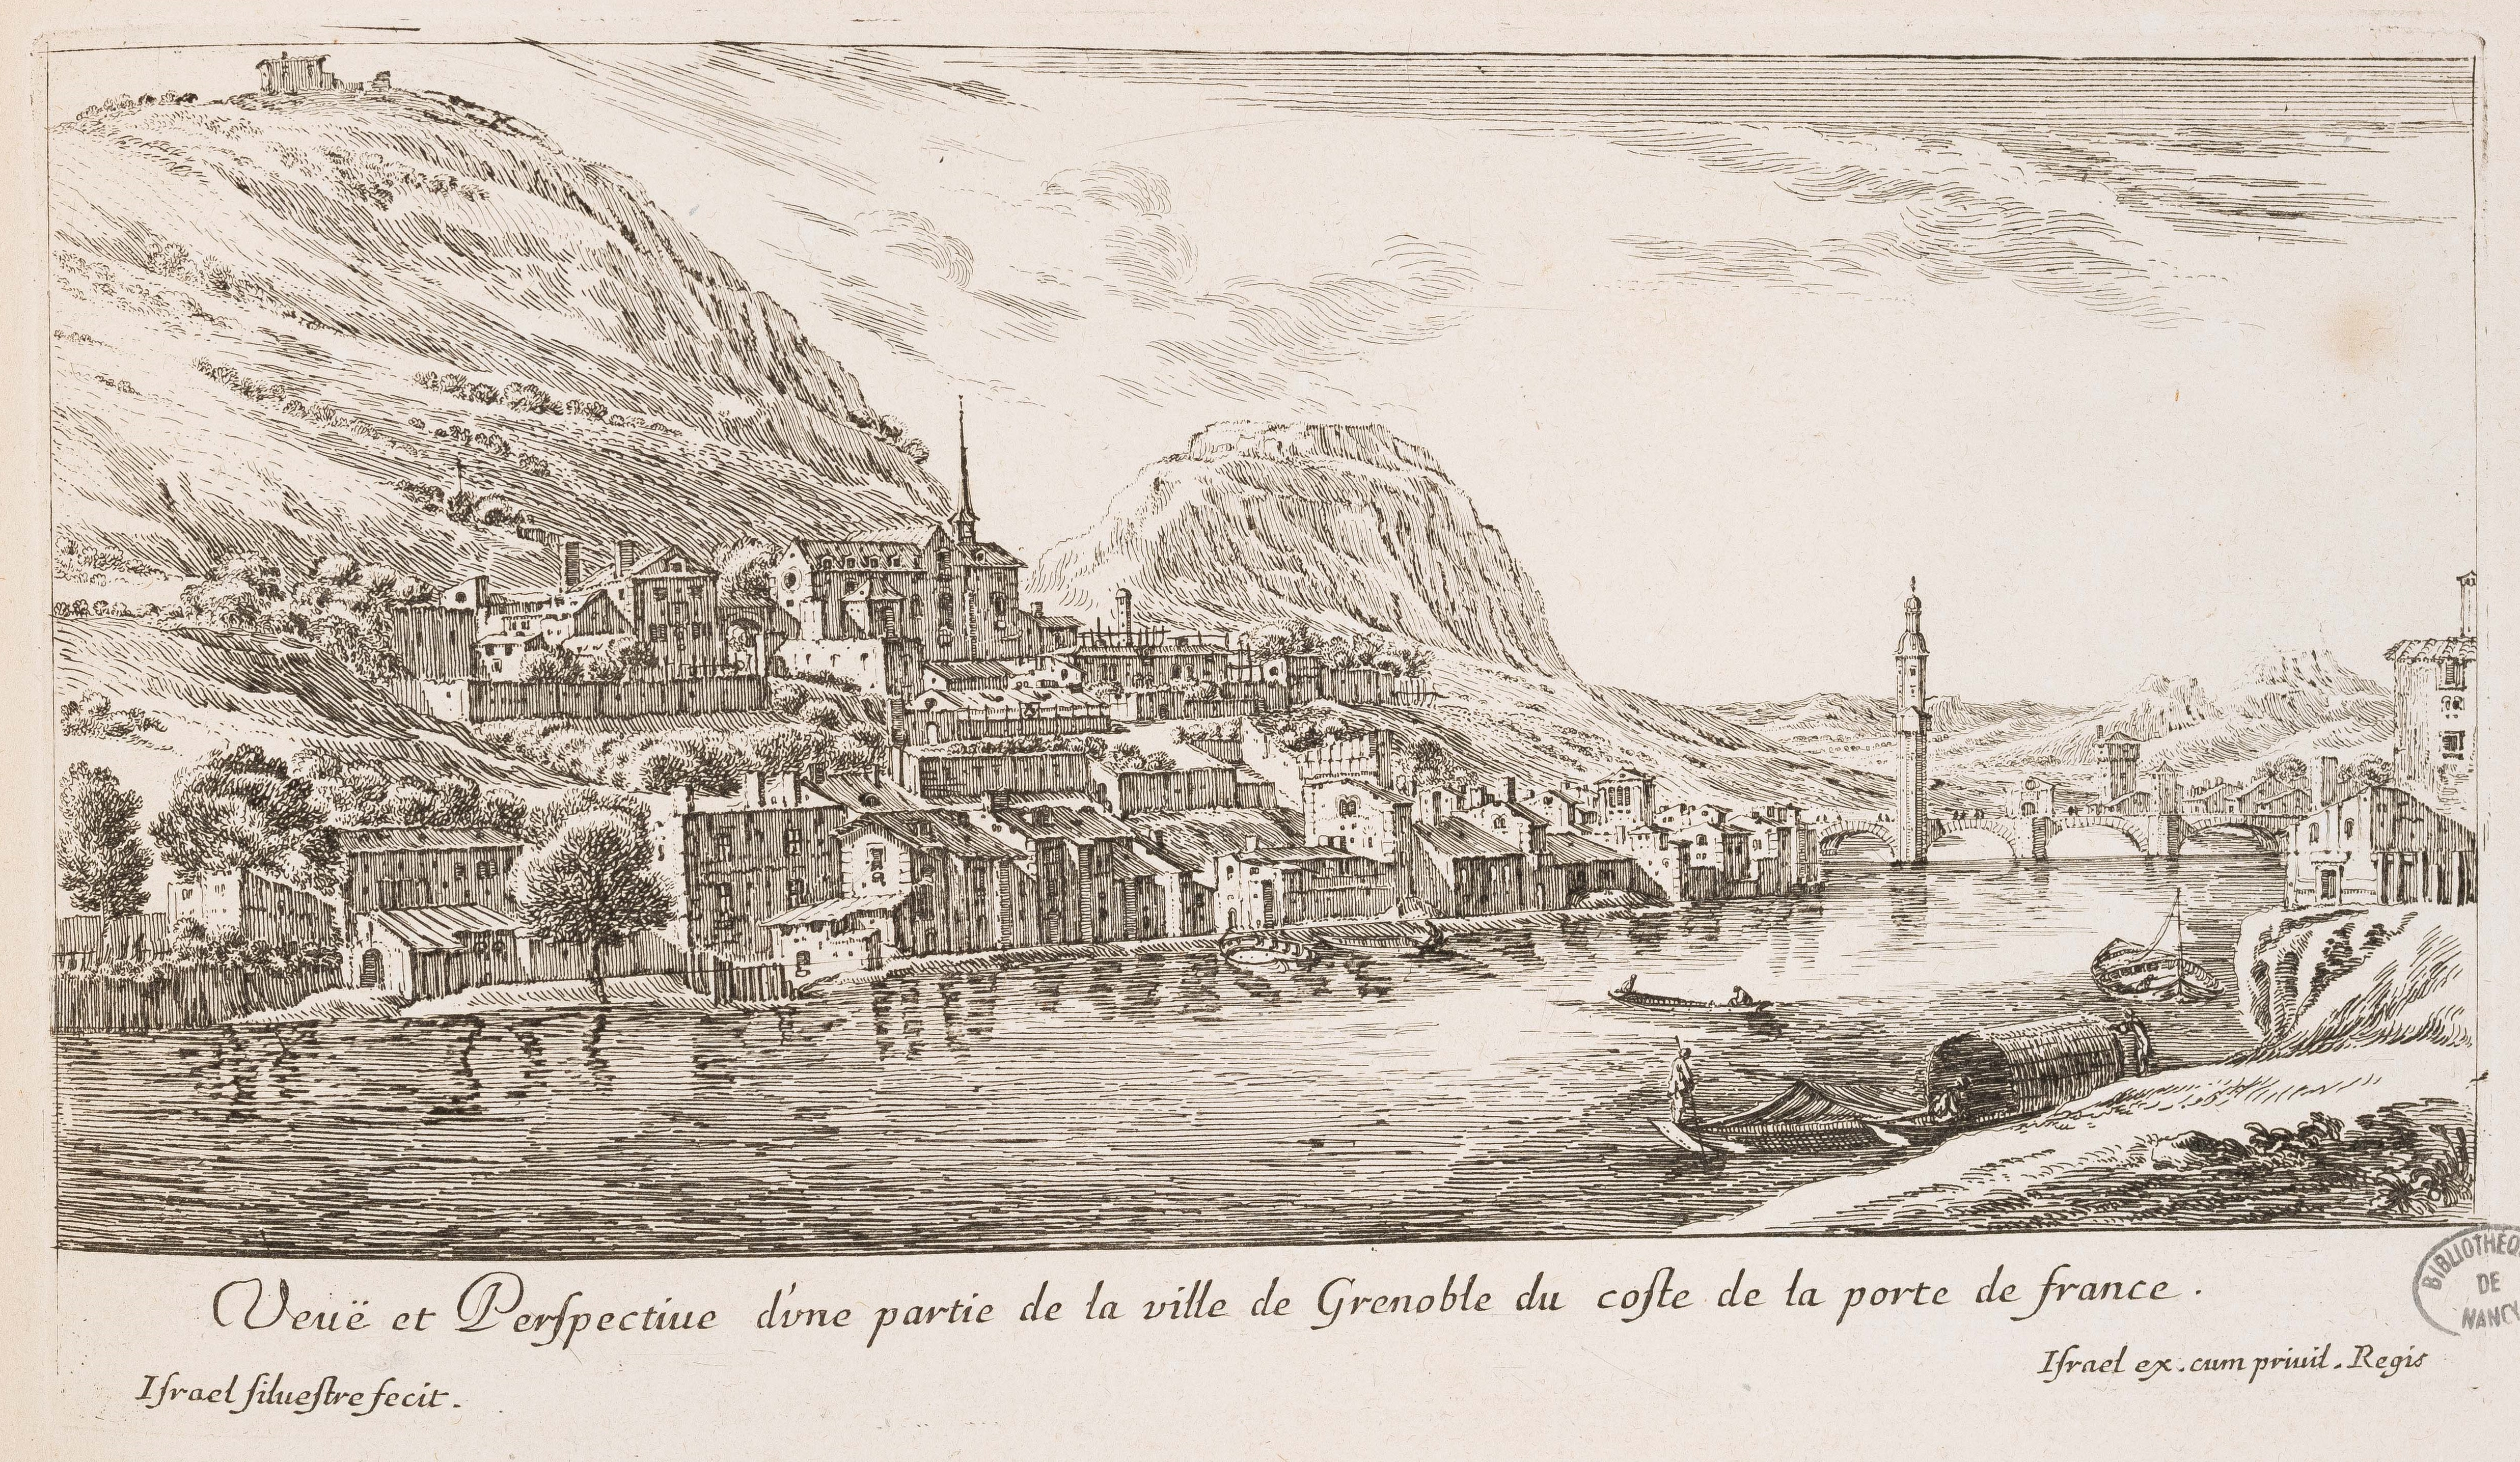 Israël Silvestre : Veuë et Perspectiue d'une partie de la ville de Grenoble du coste de la porte de france.